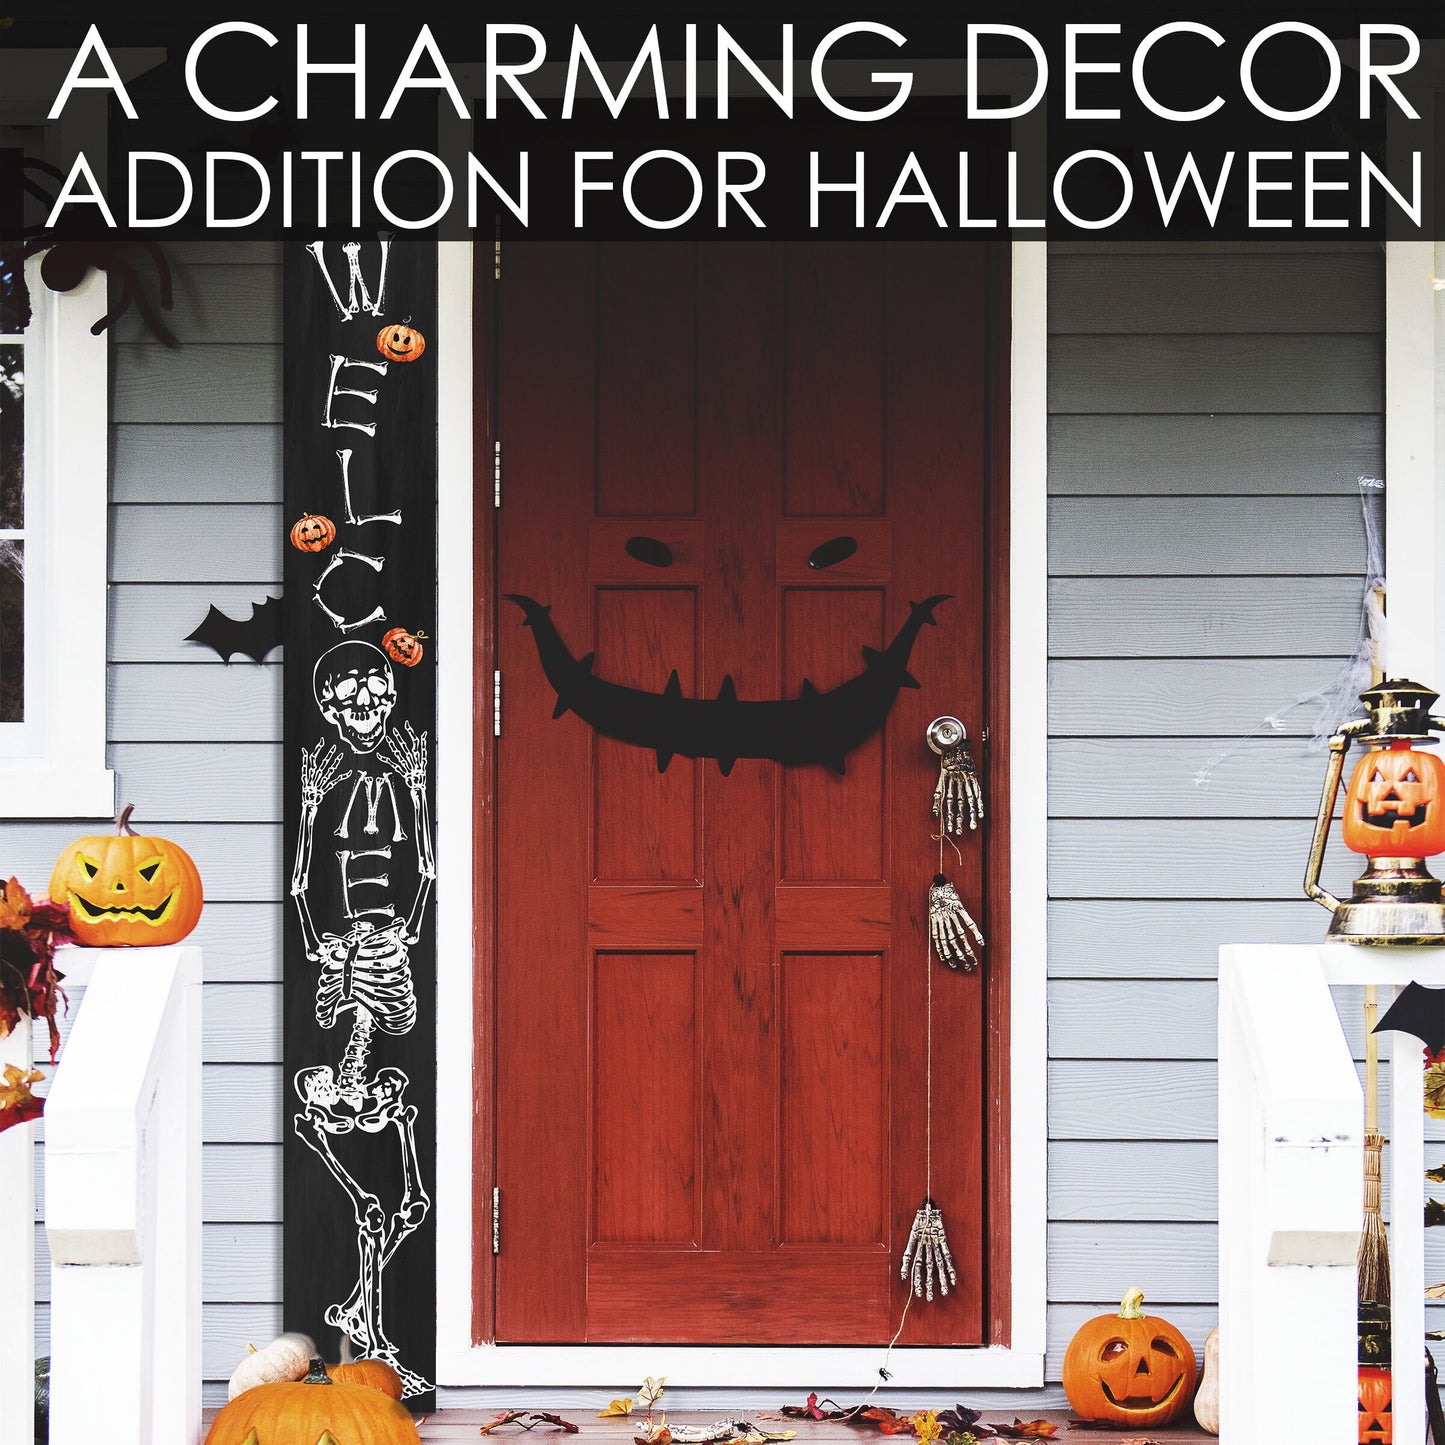 72in Wooden Halloween Skeleton Welcome Sign - Spooky Front Door Decor for Seasonal Celebrations